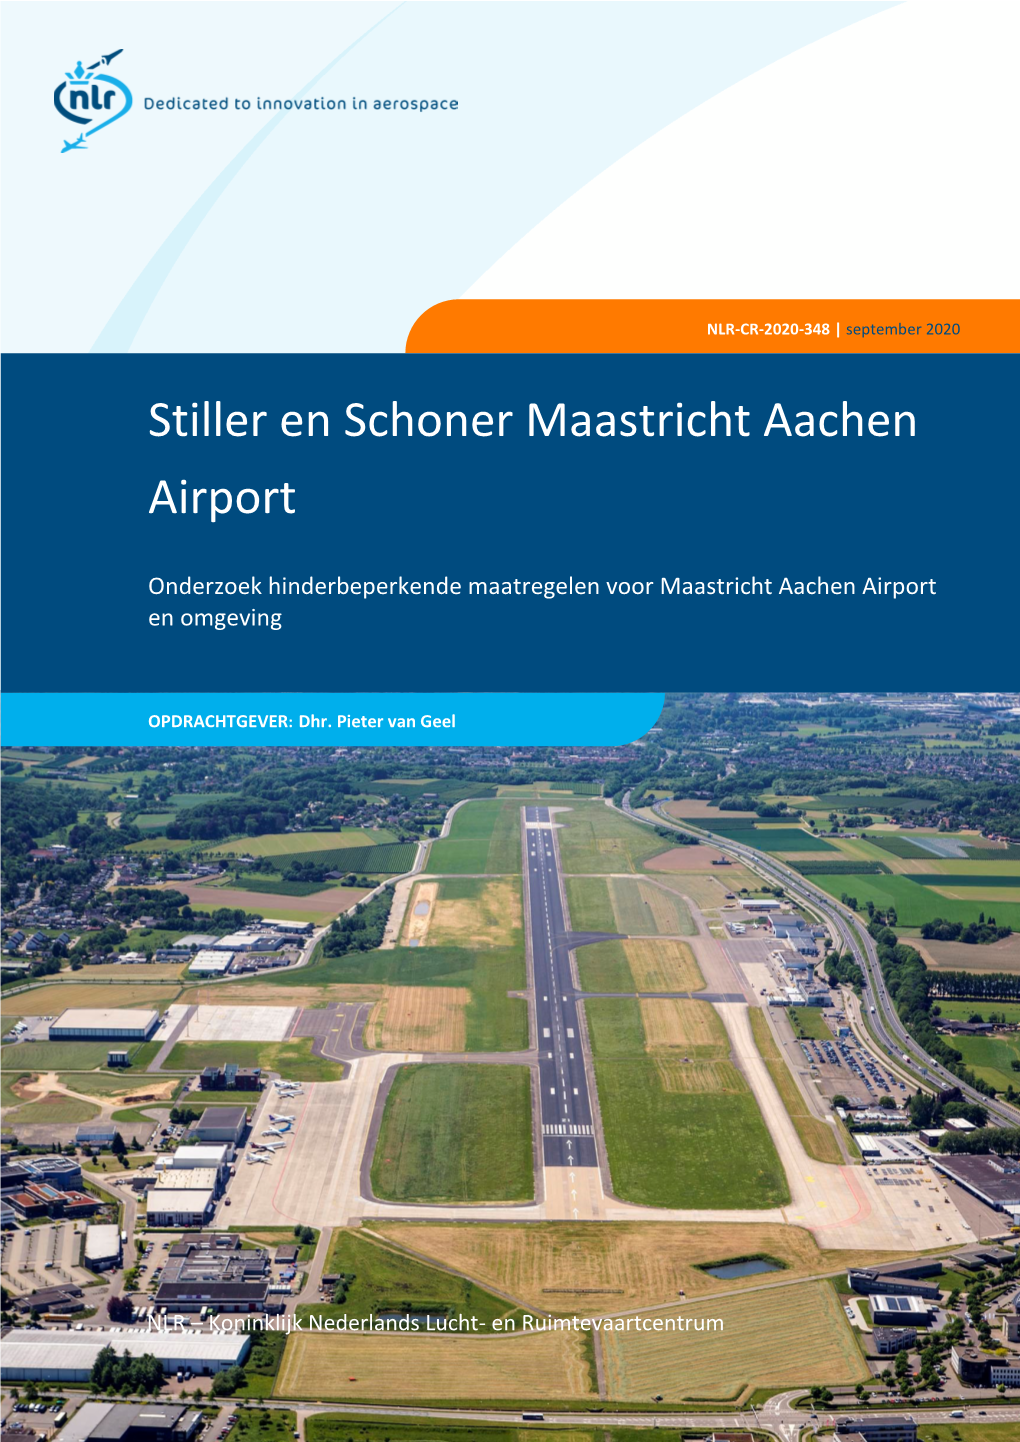 Stiller En Schoner Maastricht Aachen Airport